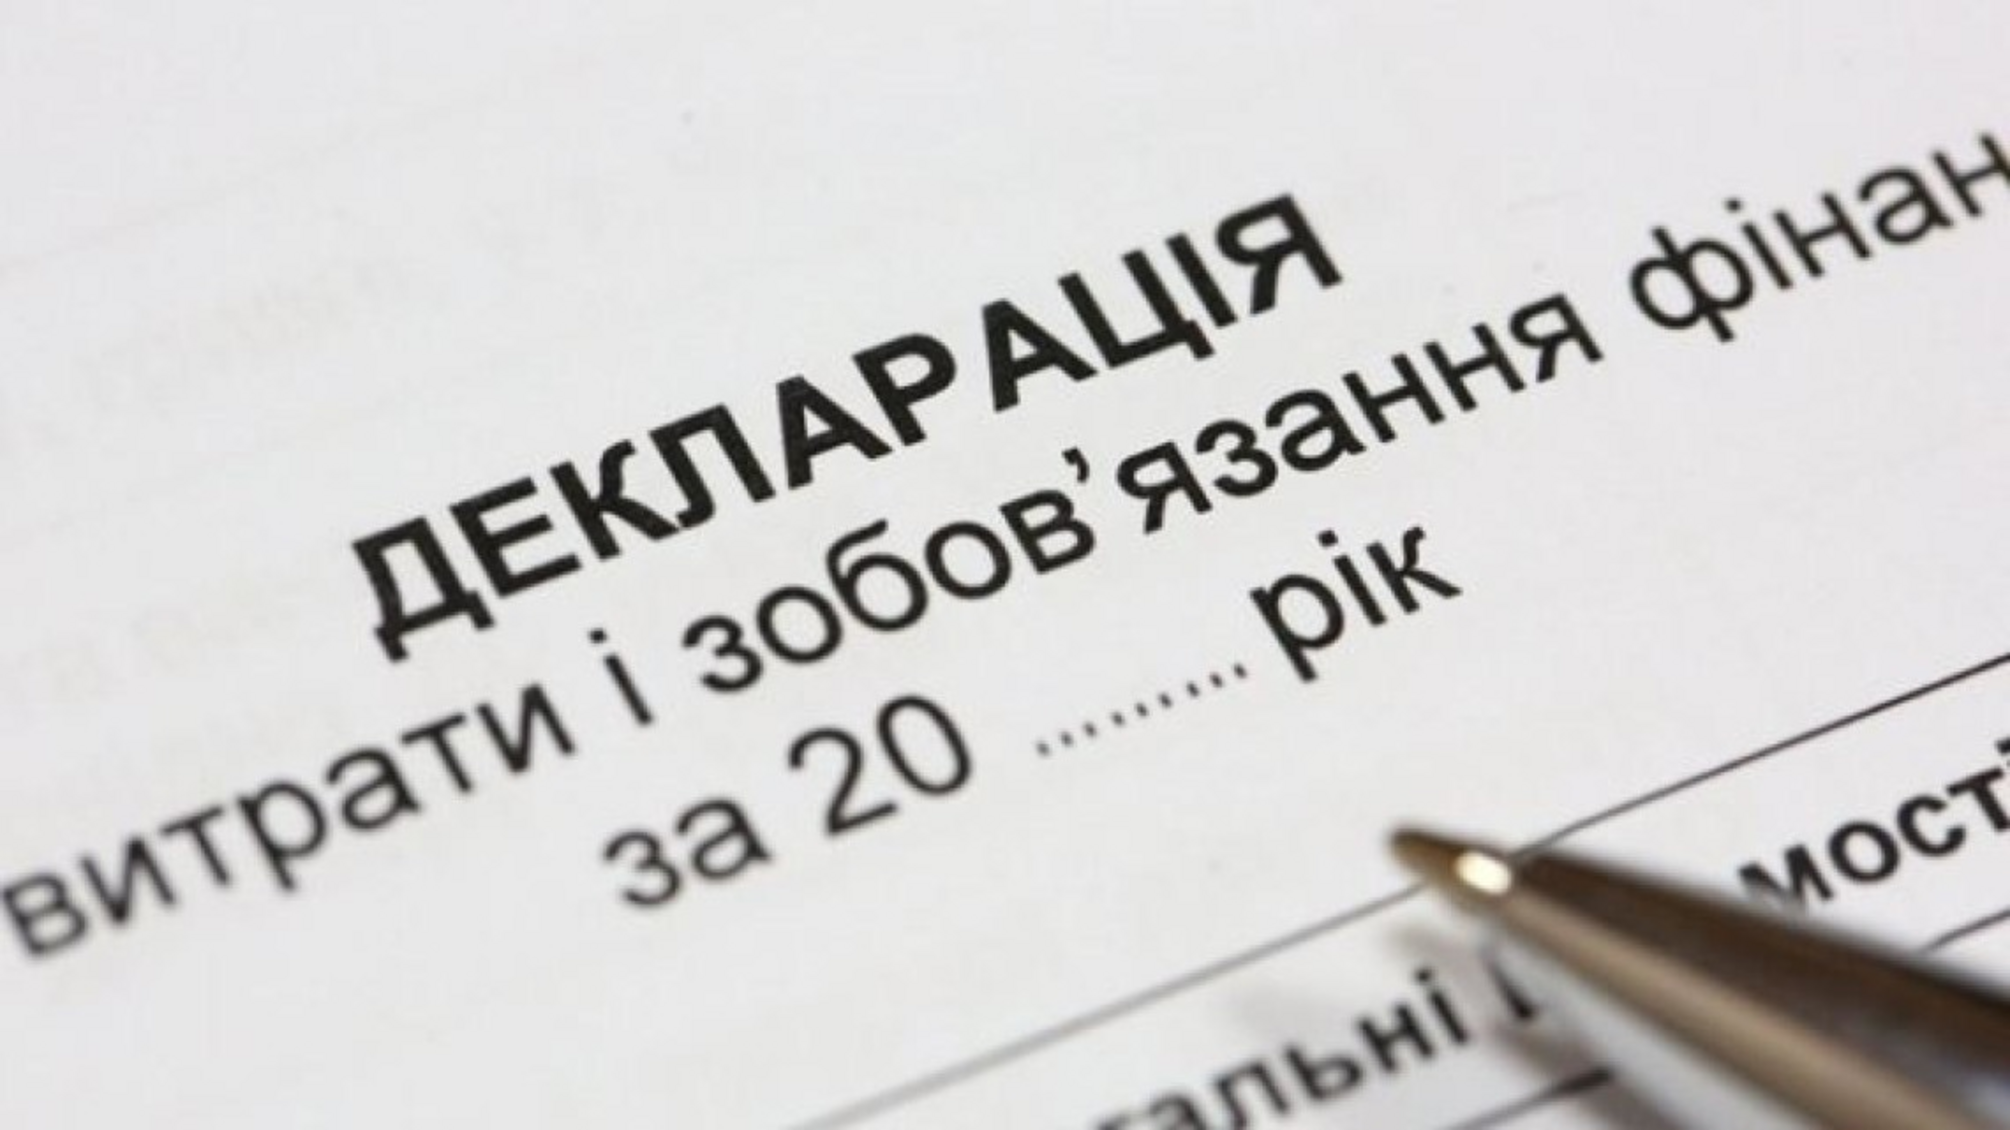 Политиков и чиновников не будут наказывать за ошибки в декларациях, если они не превышают 302 тыс грн, - НАПК